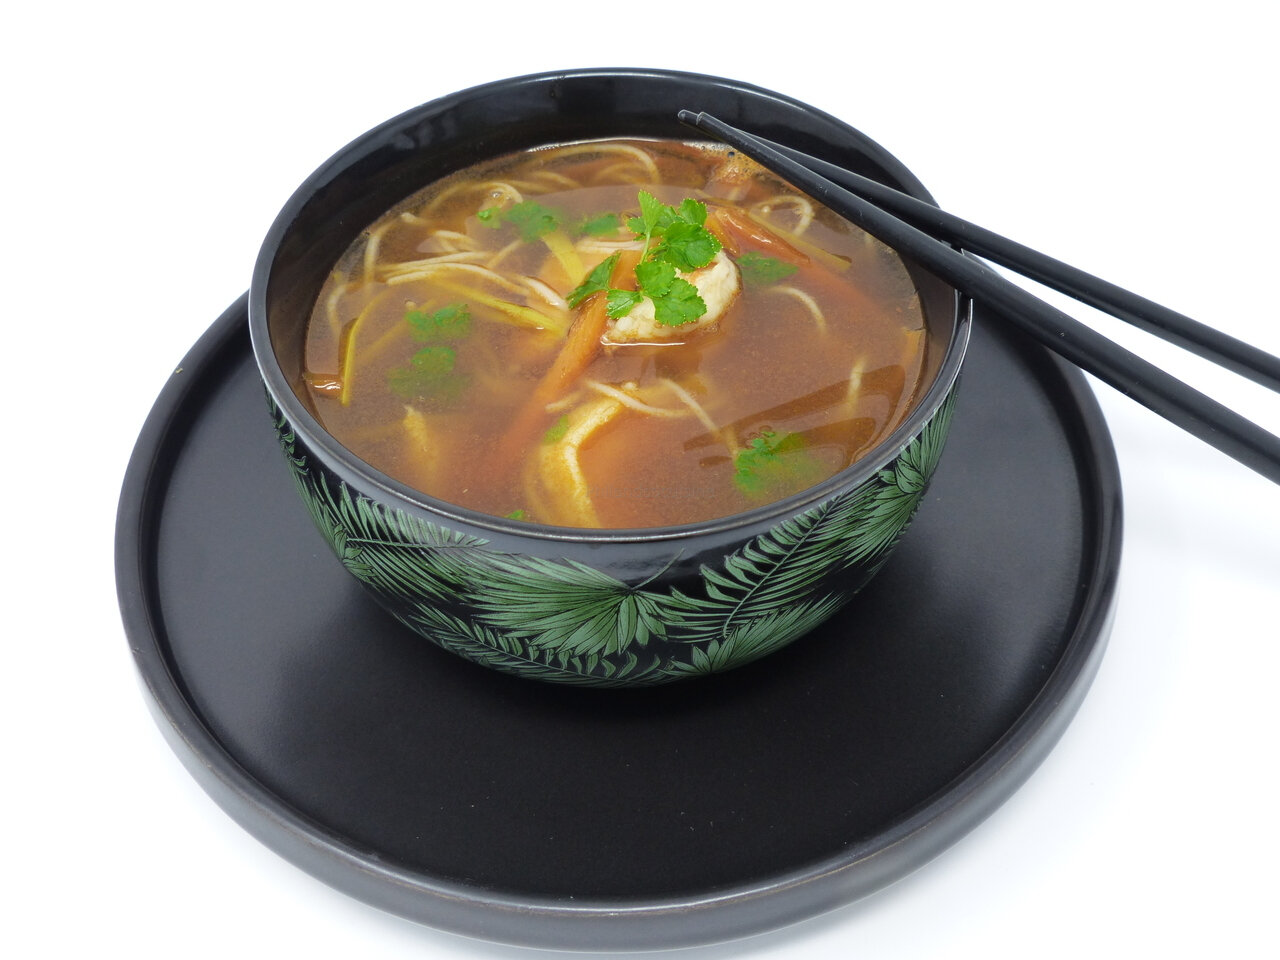 Soupe asiatique aux nouilles de riz et crevettes - 5 ingredients